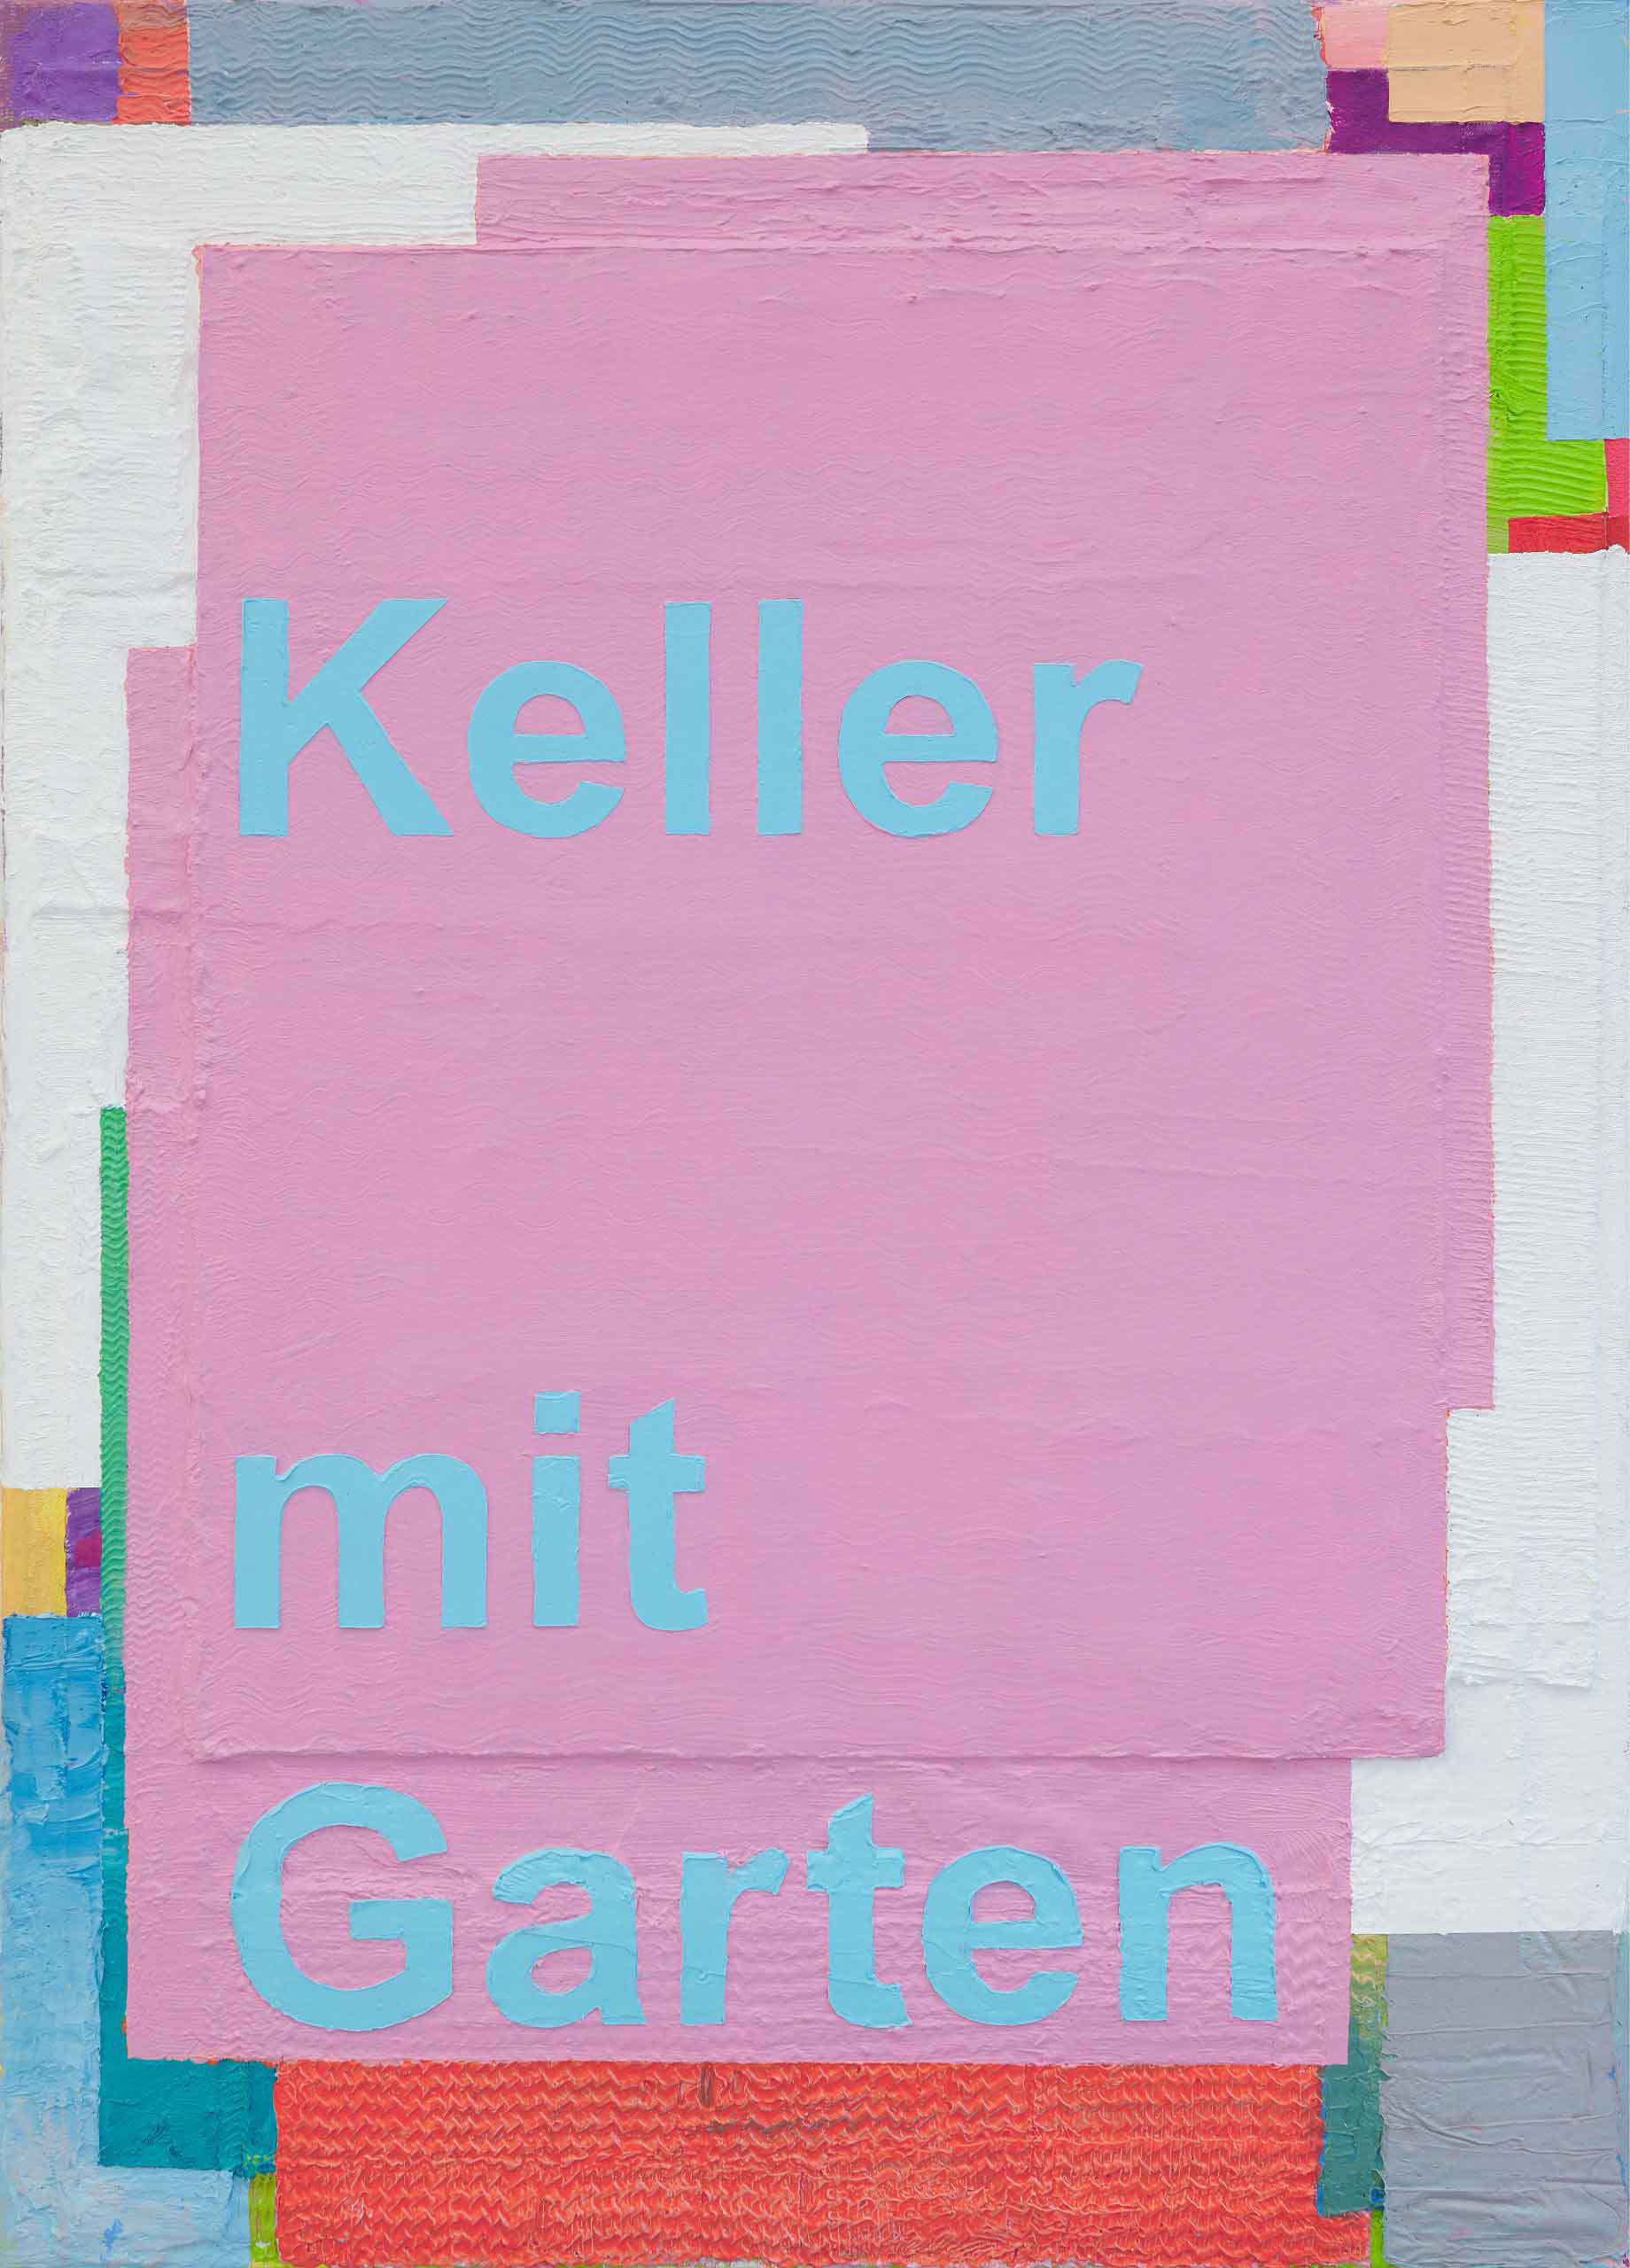 Keller mit Garten - 2021, 70 x 50 cm